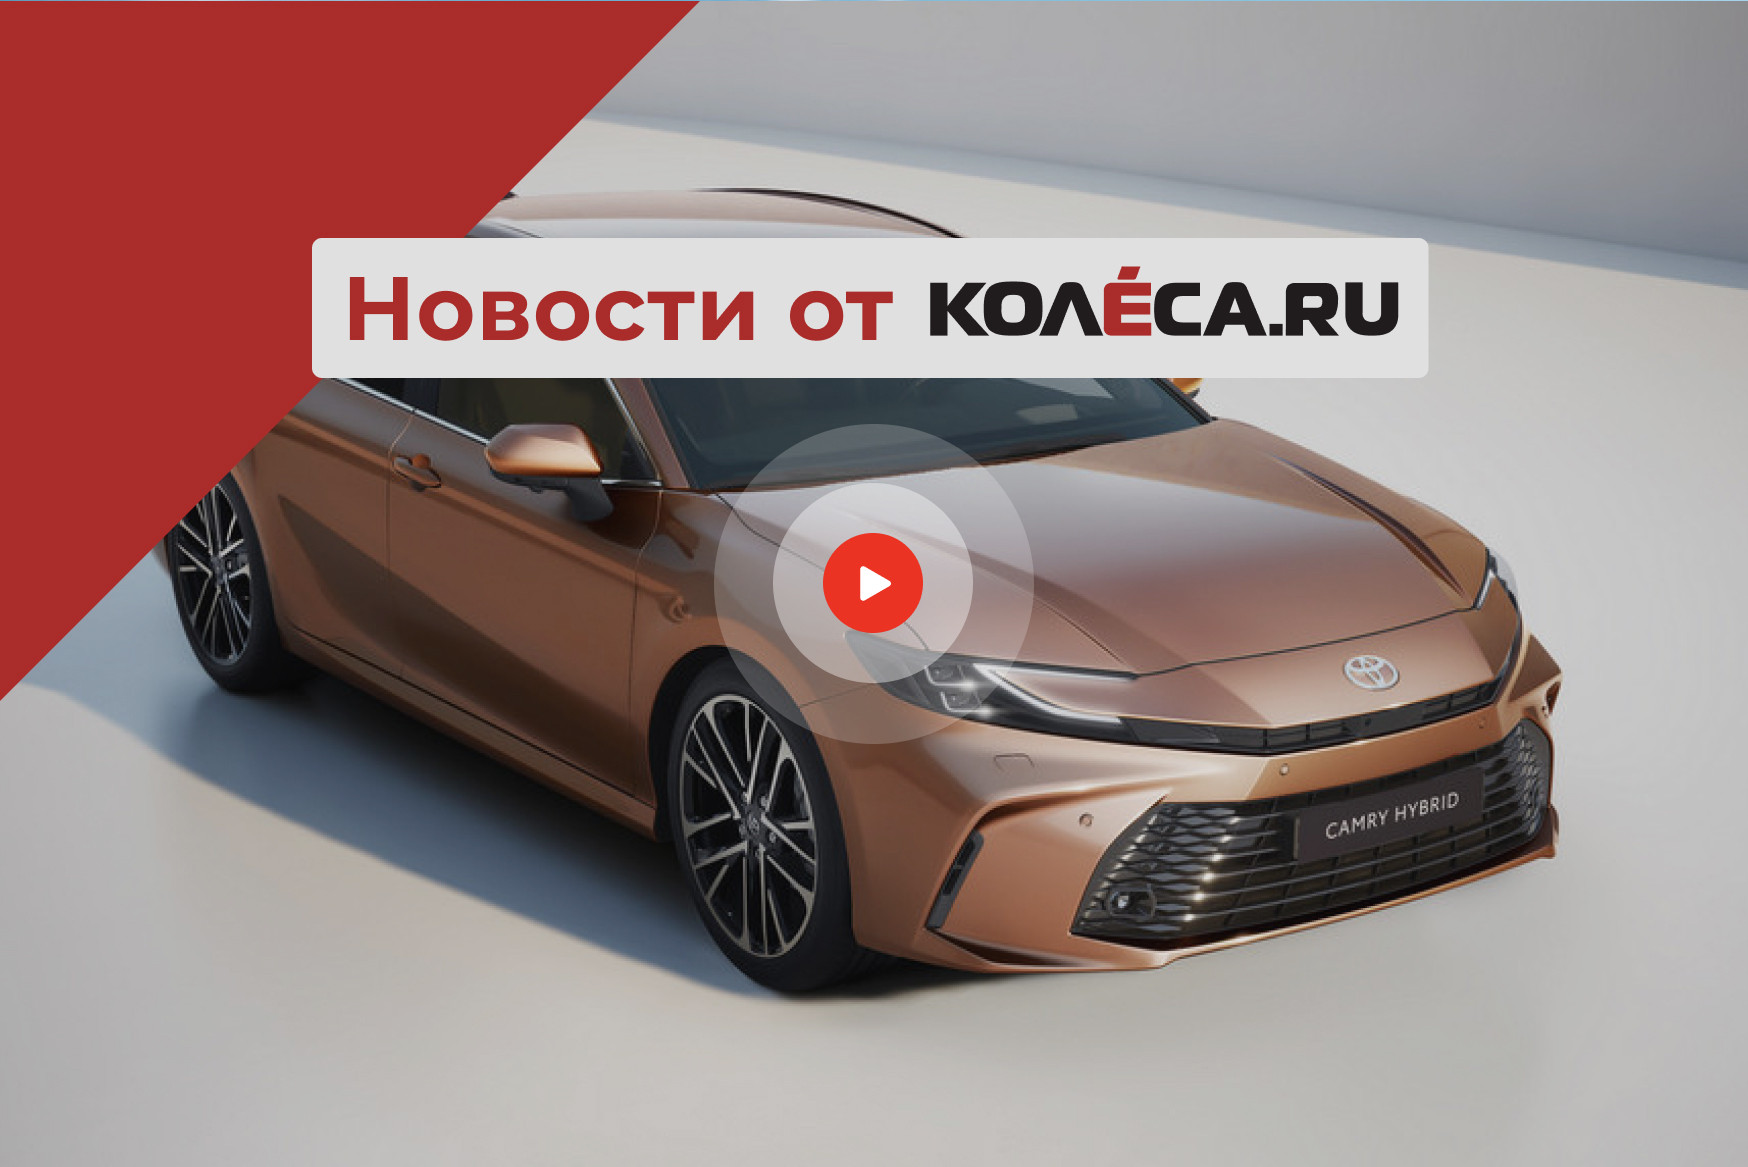 Европейская Toyota Camry, новый бренд и новые модели от АВТОВАЗа и итоги российского рынка